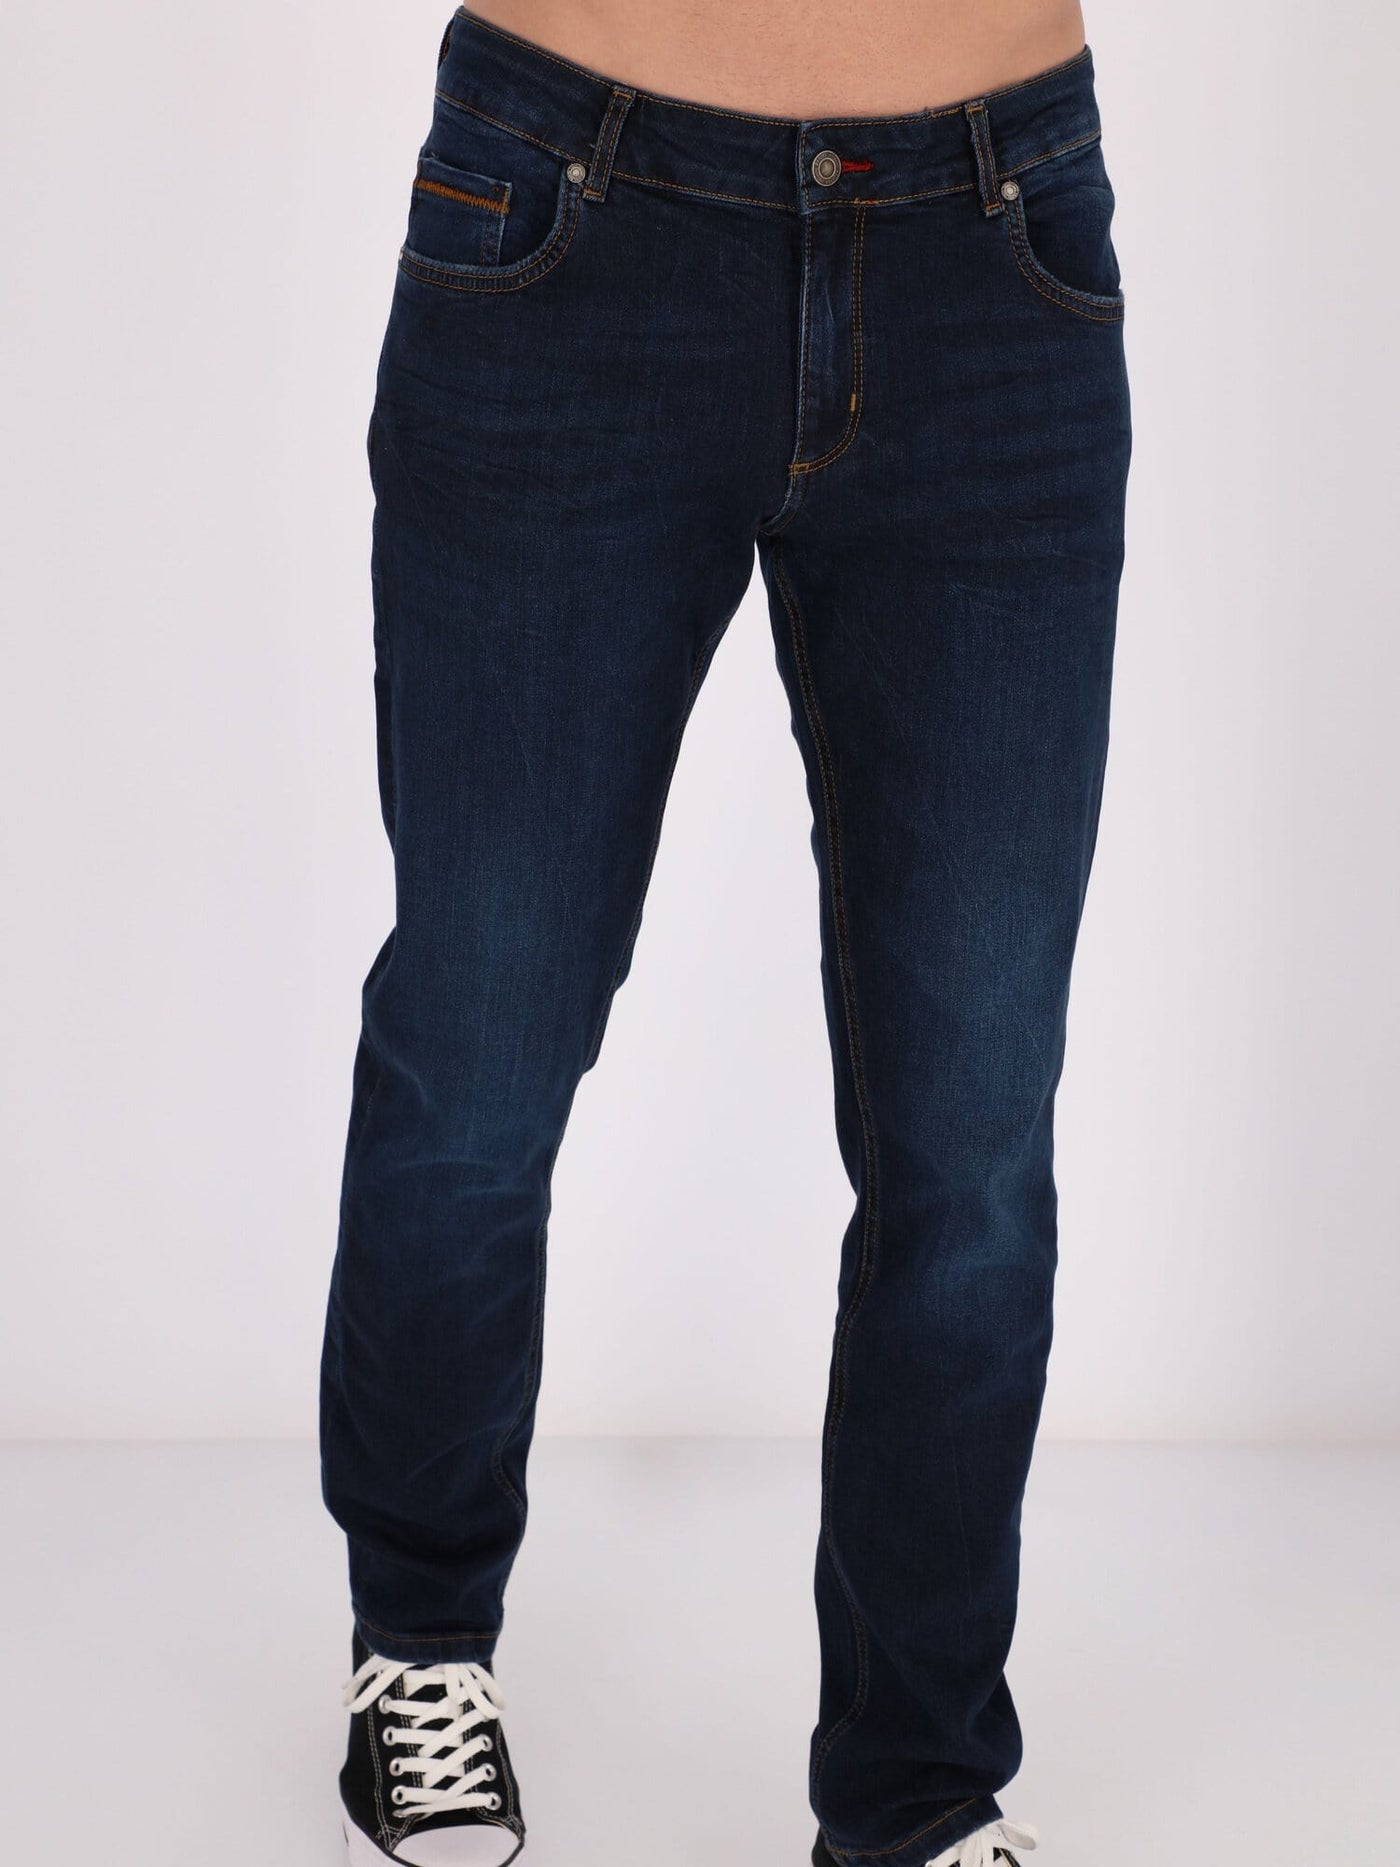 Daniel Hechter Jeans Slim Fit Low-Rise Jeans Pants